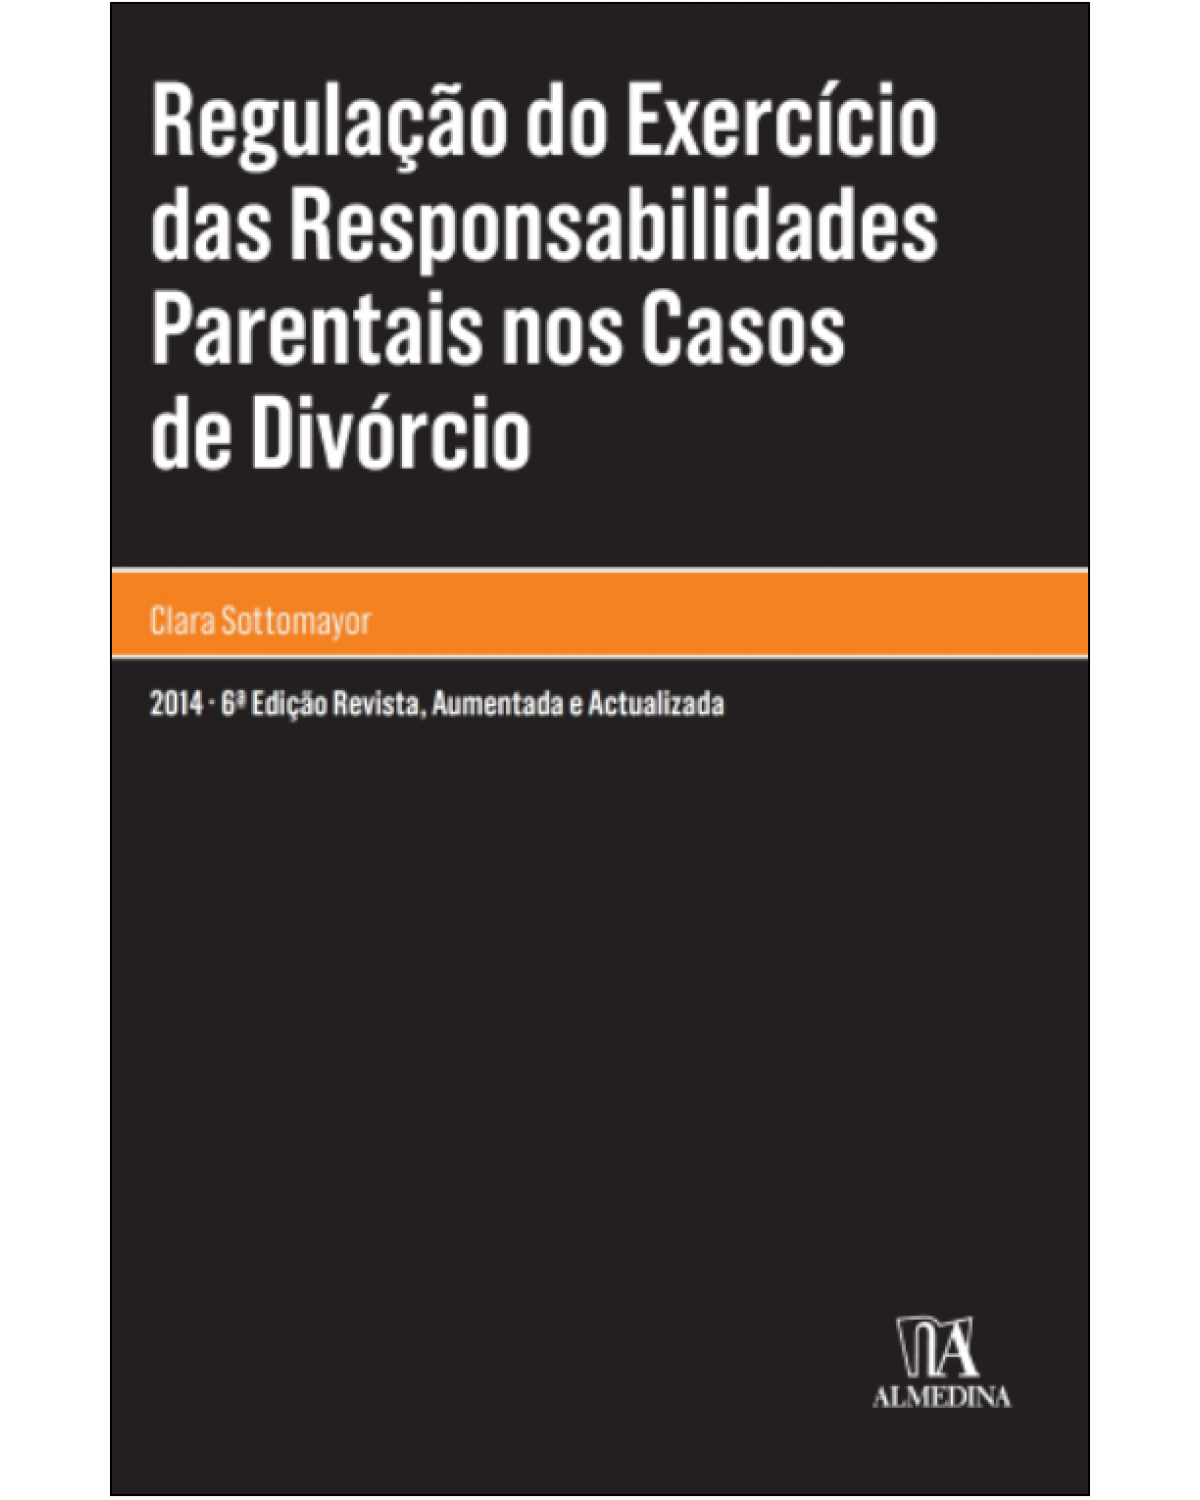 Regulação do exercício das responsabilidades parentais nos casos de divórcio - 6ª Edição | 2014